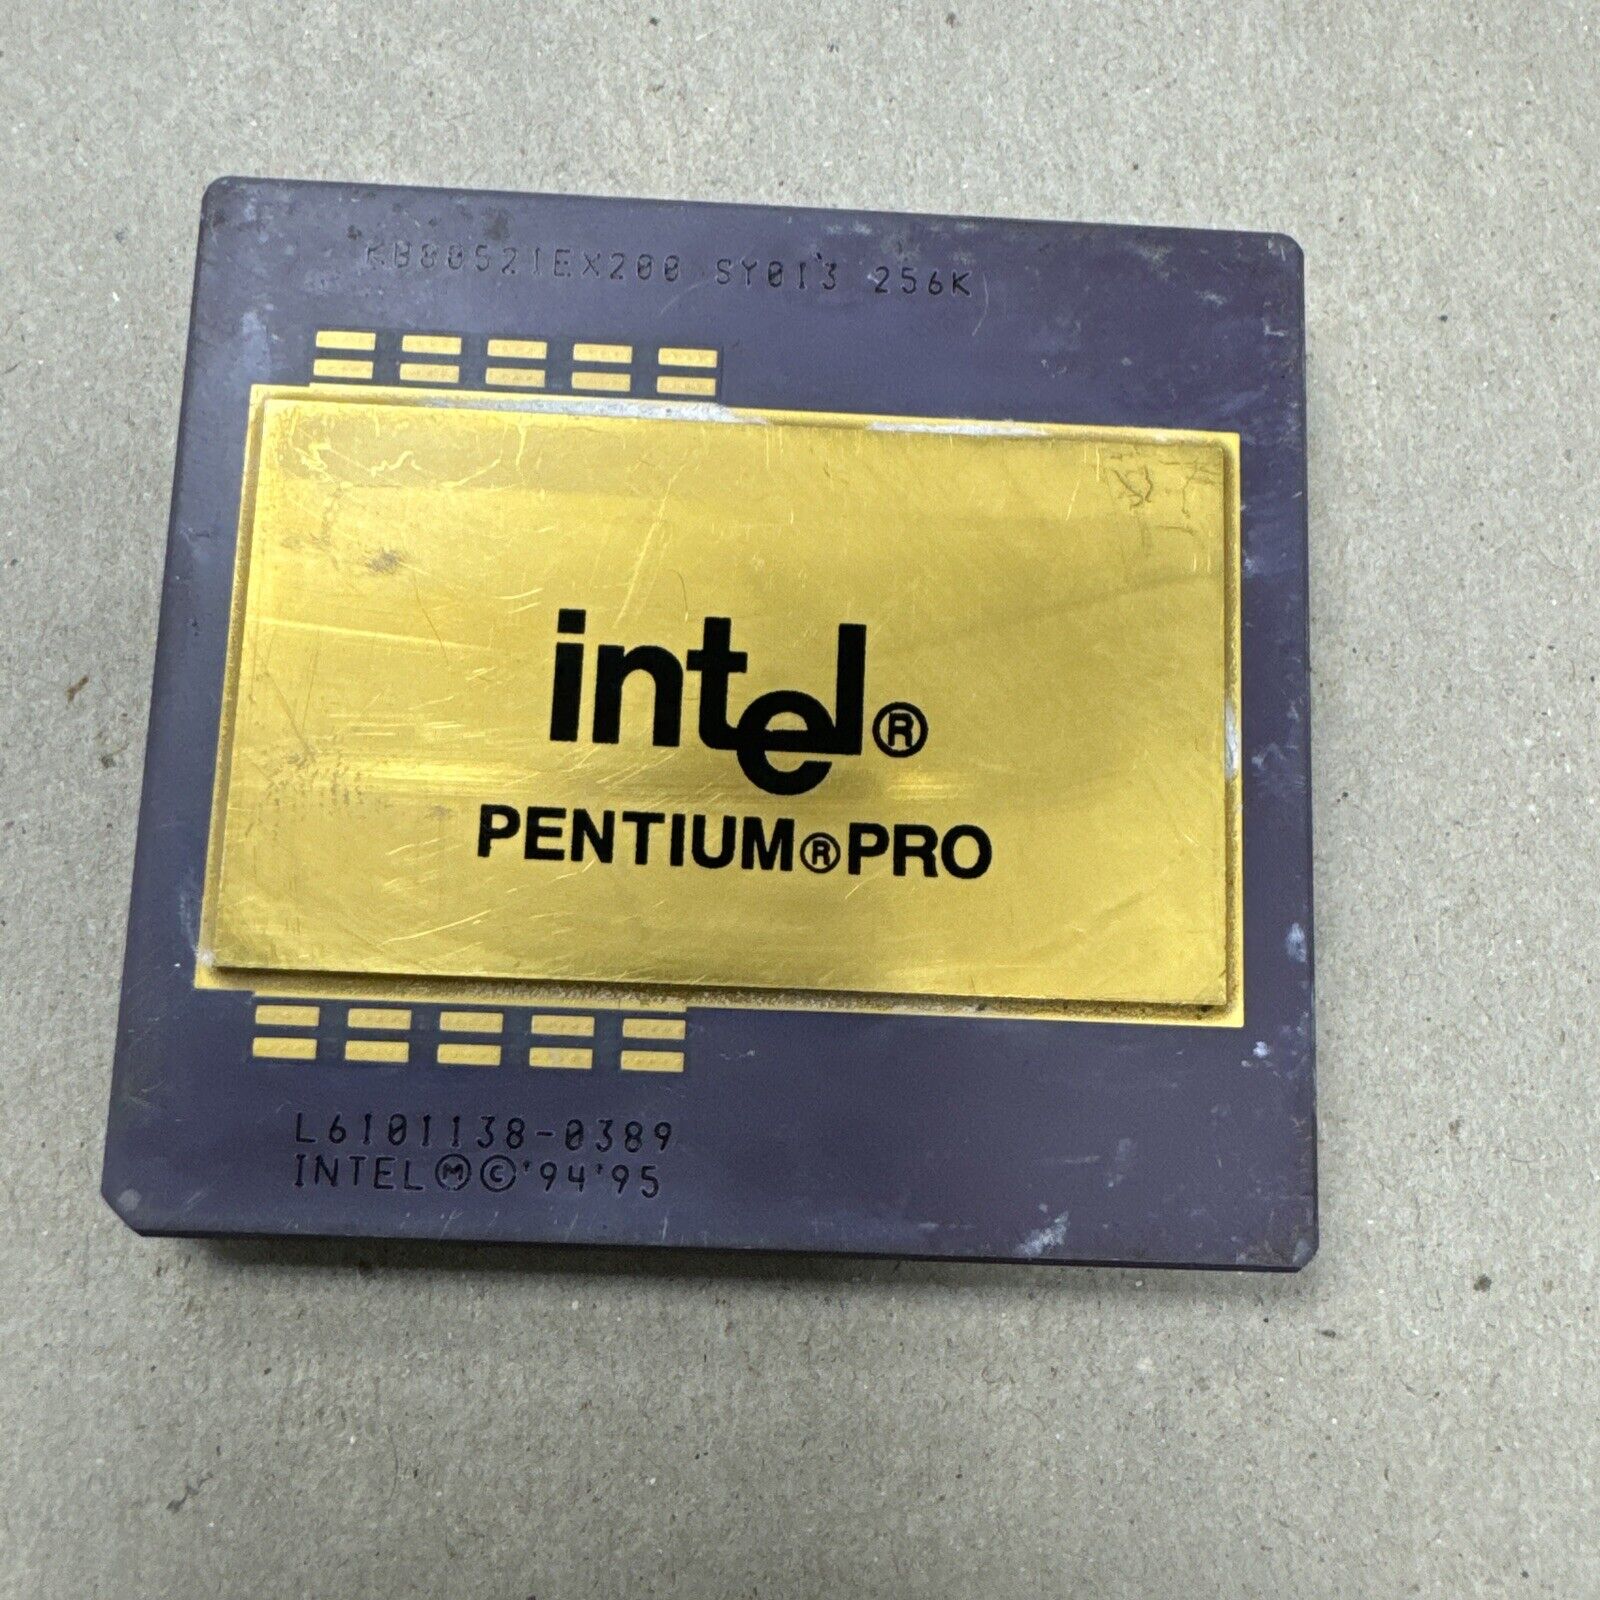 Intel Pentium Pro 200MHz (KB80521EX200 ) Processor